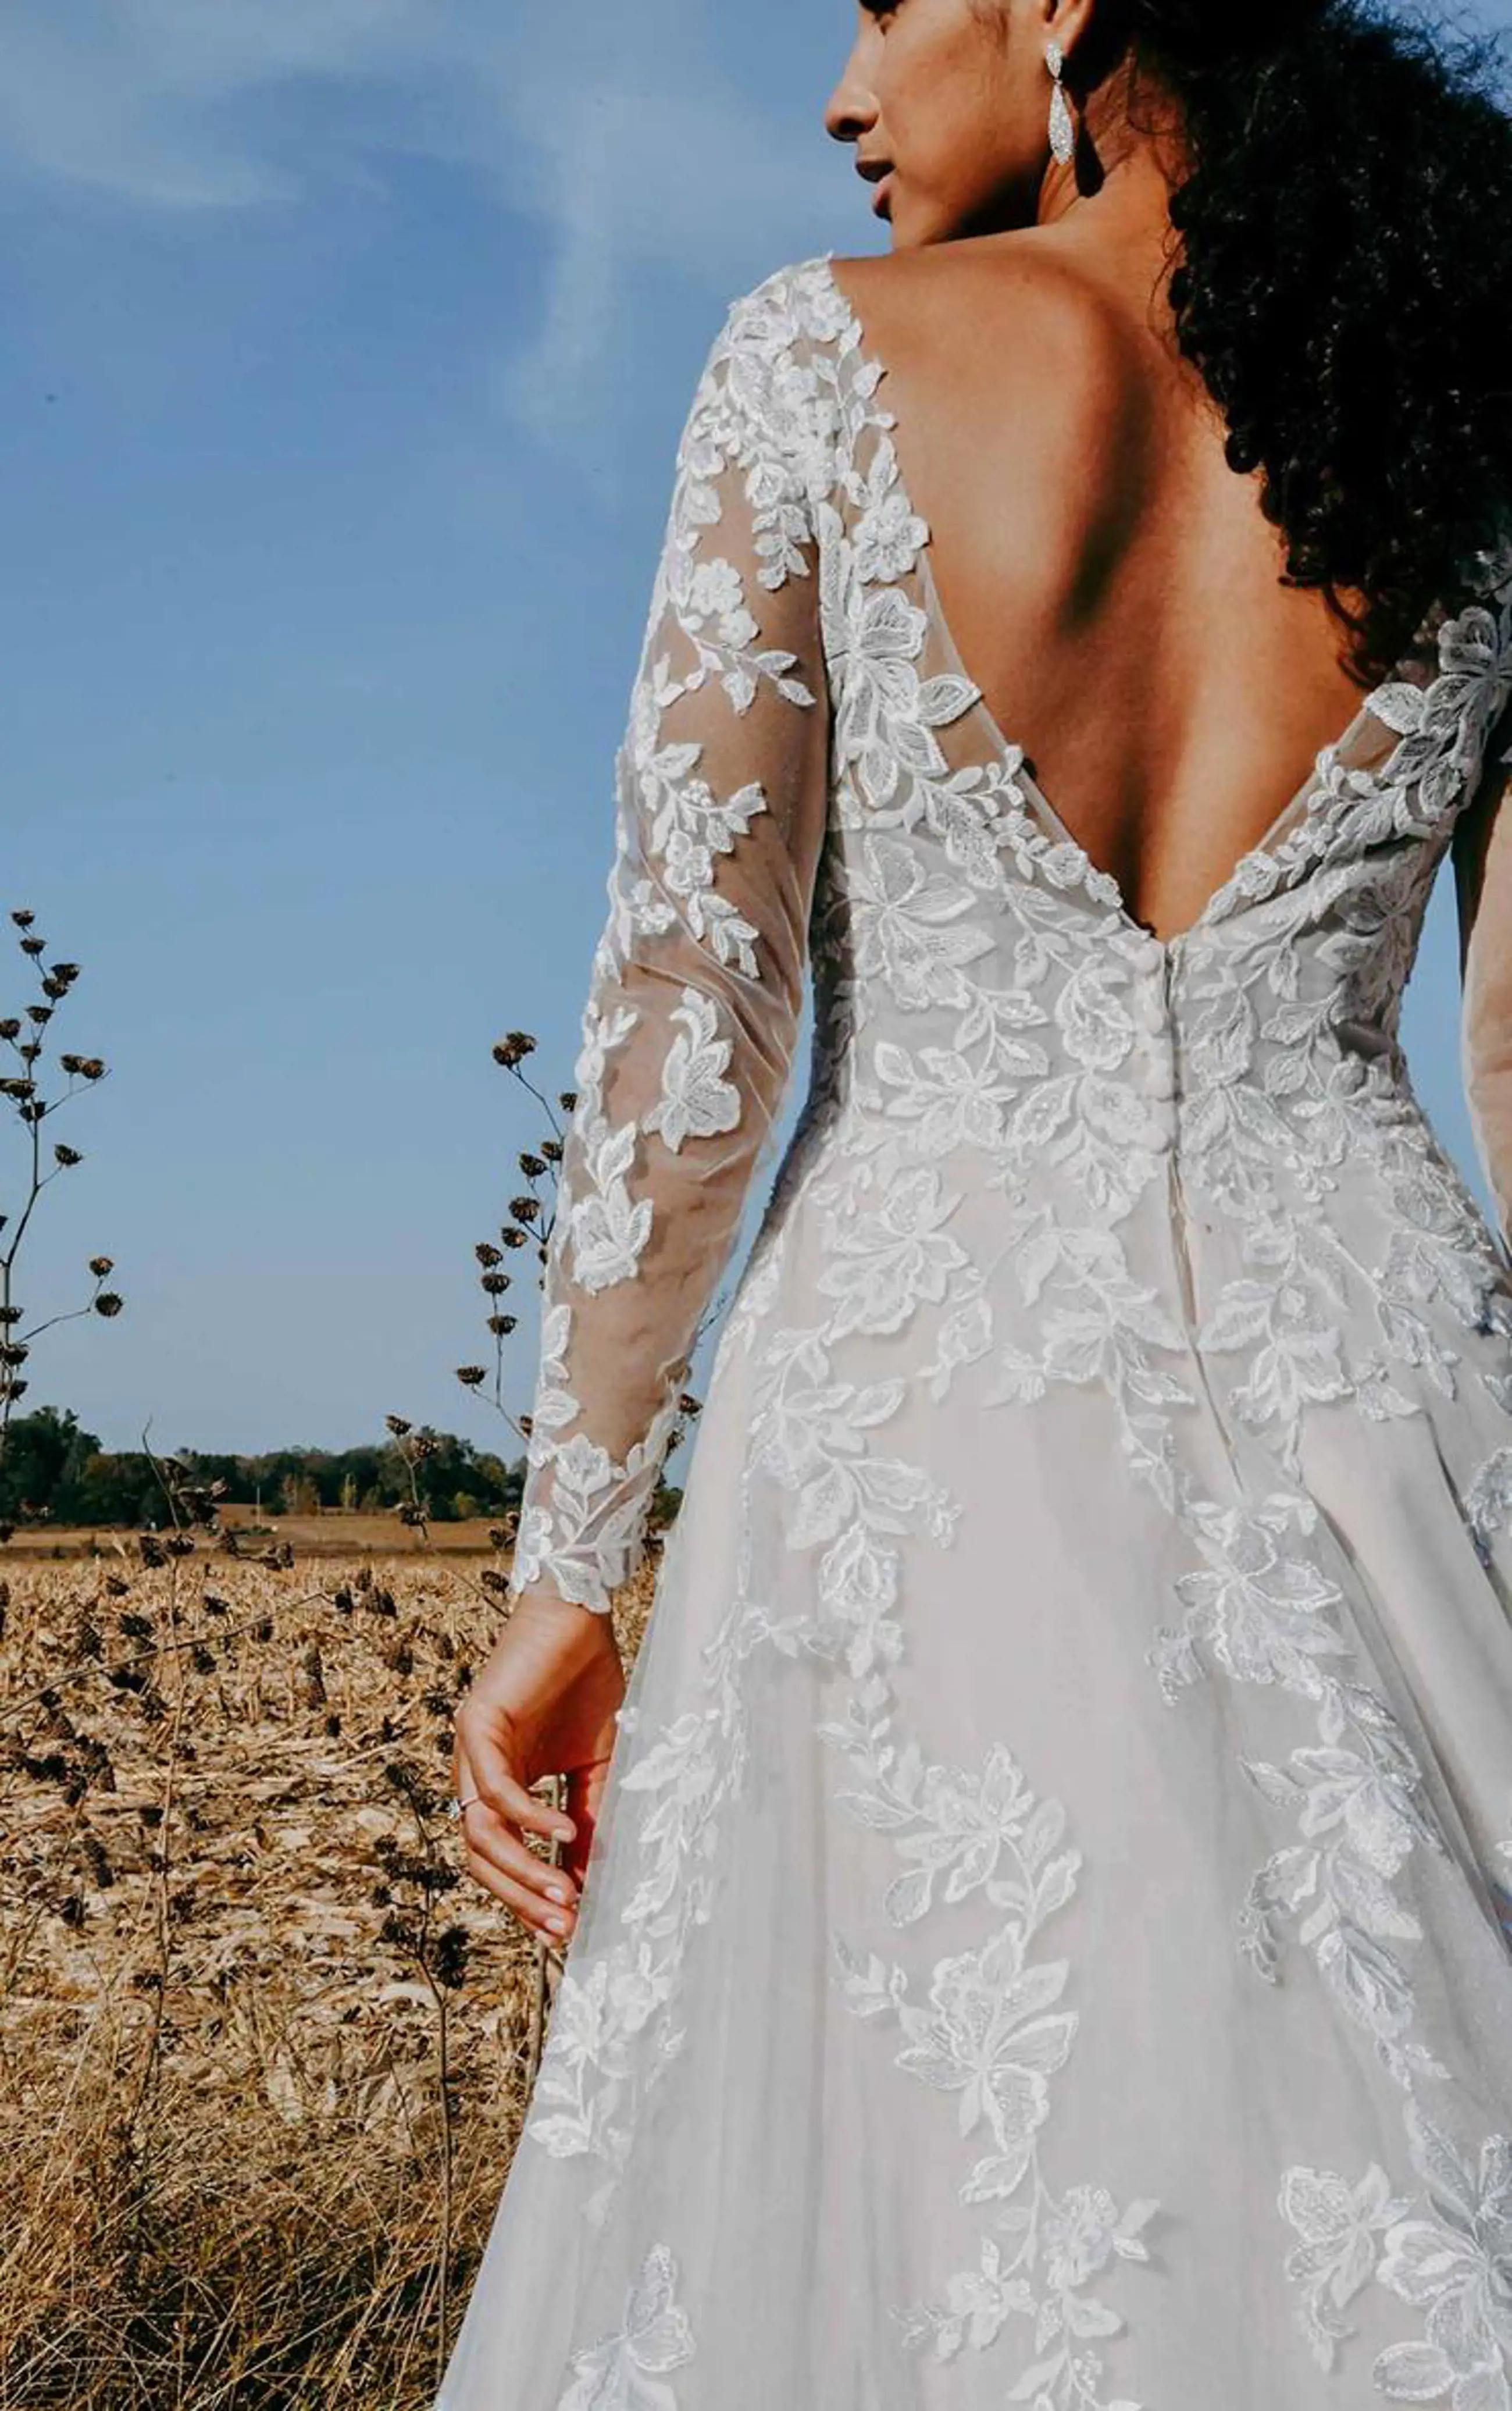 Plus-Size Wedding Dresses Image